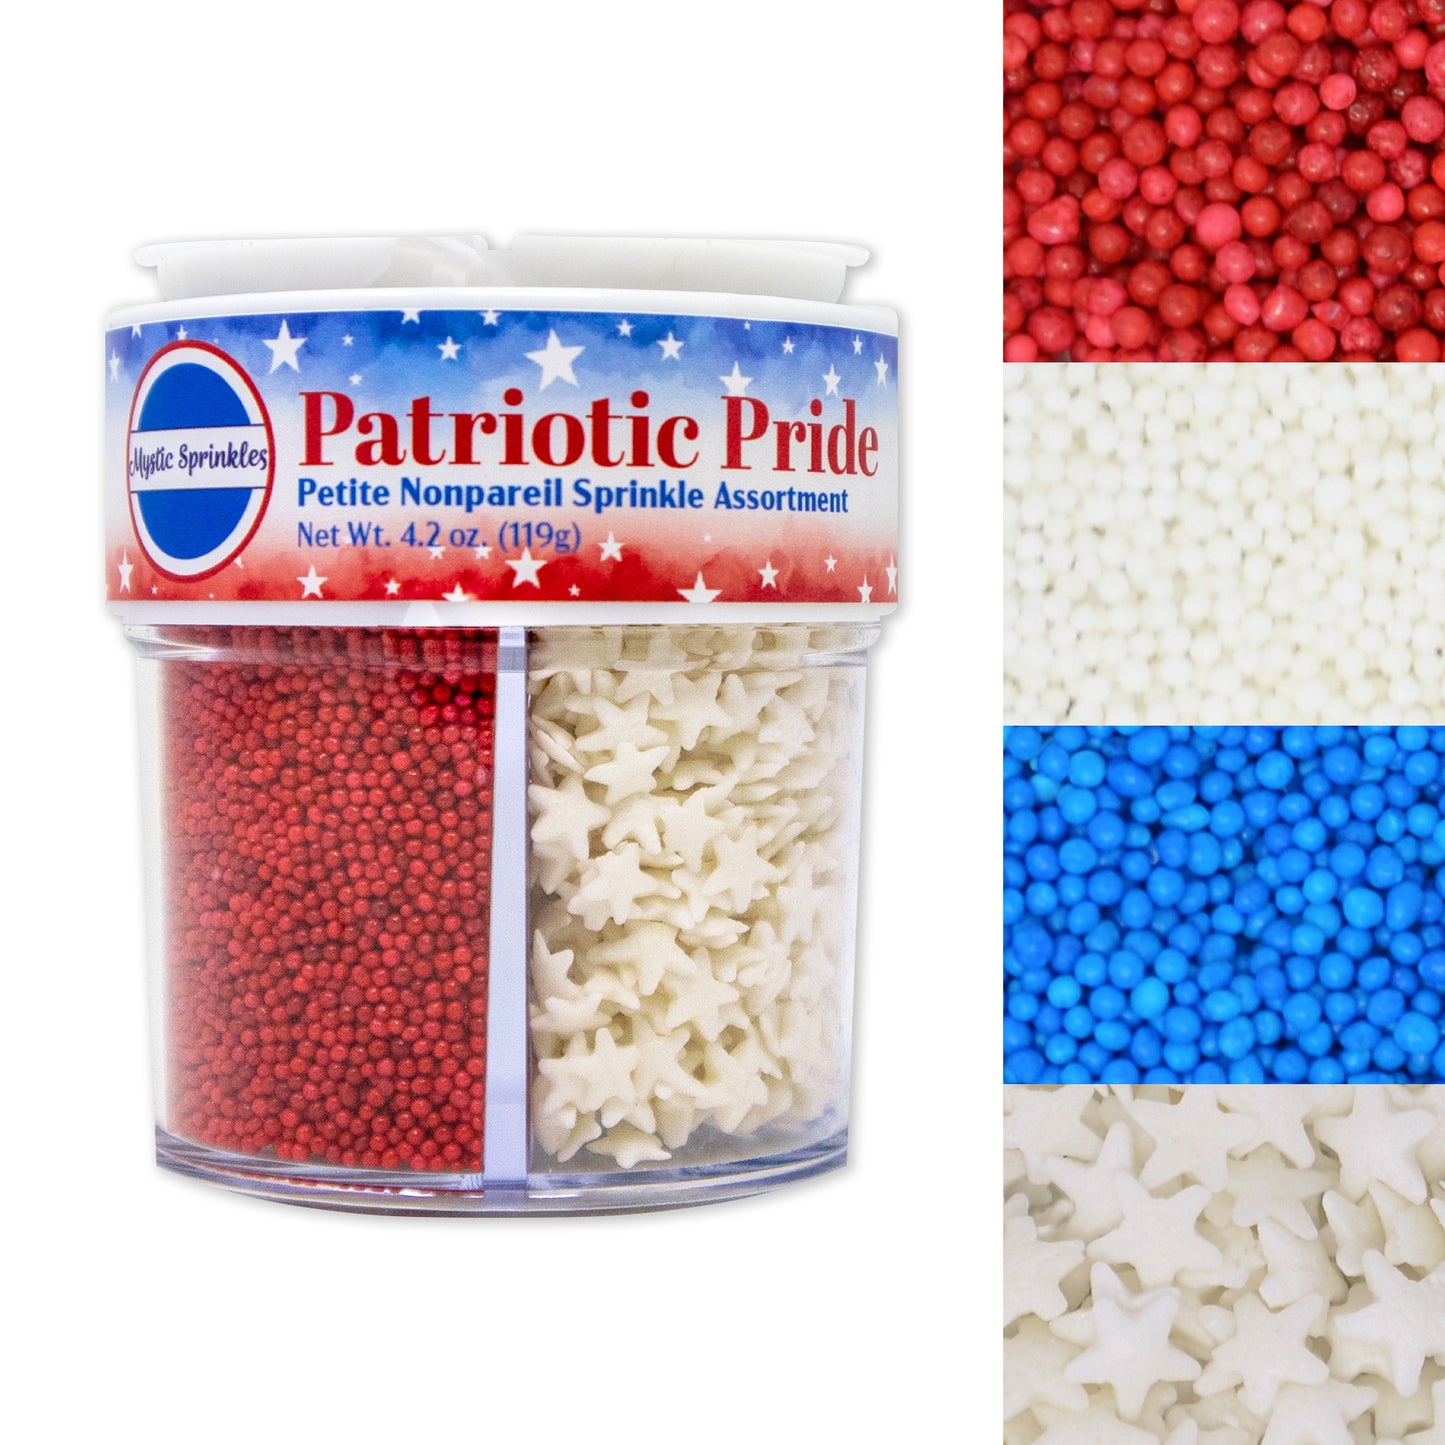 Patriotic Pride Nonpareil Petite Sprinkle Assortment 4.2oz